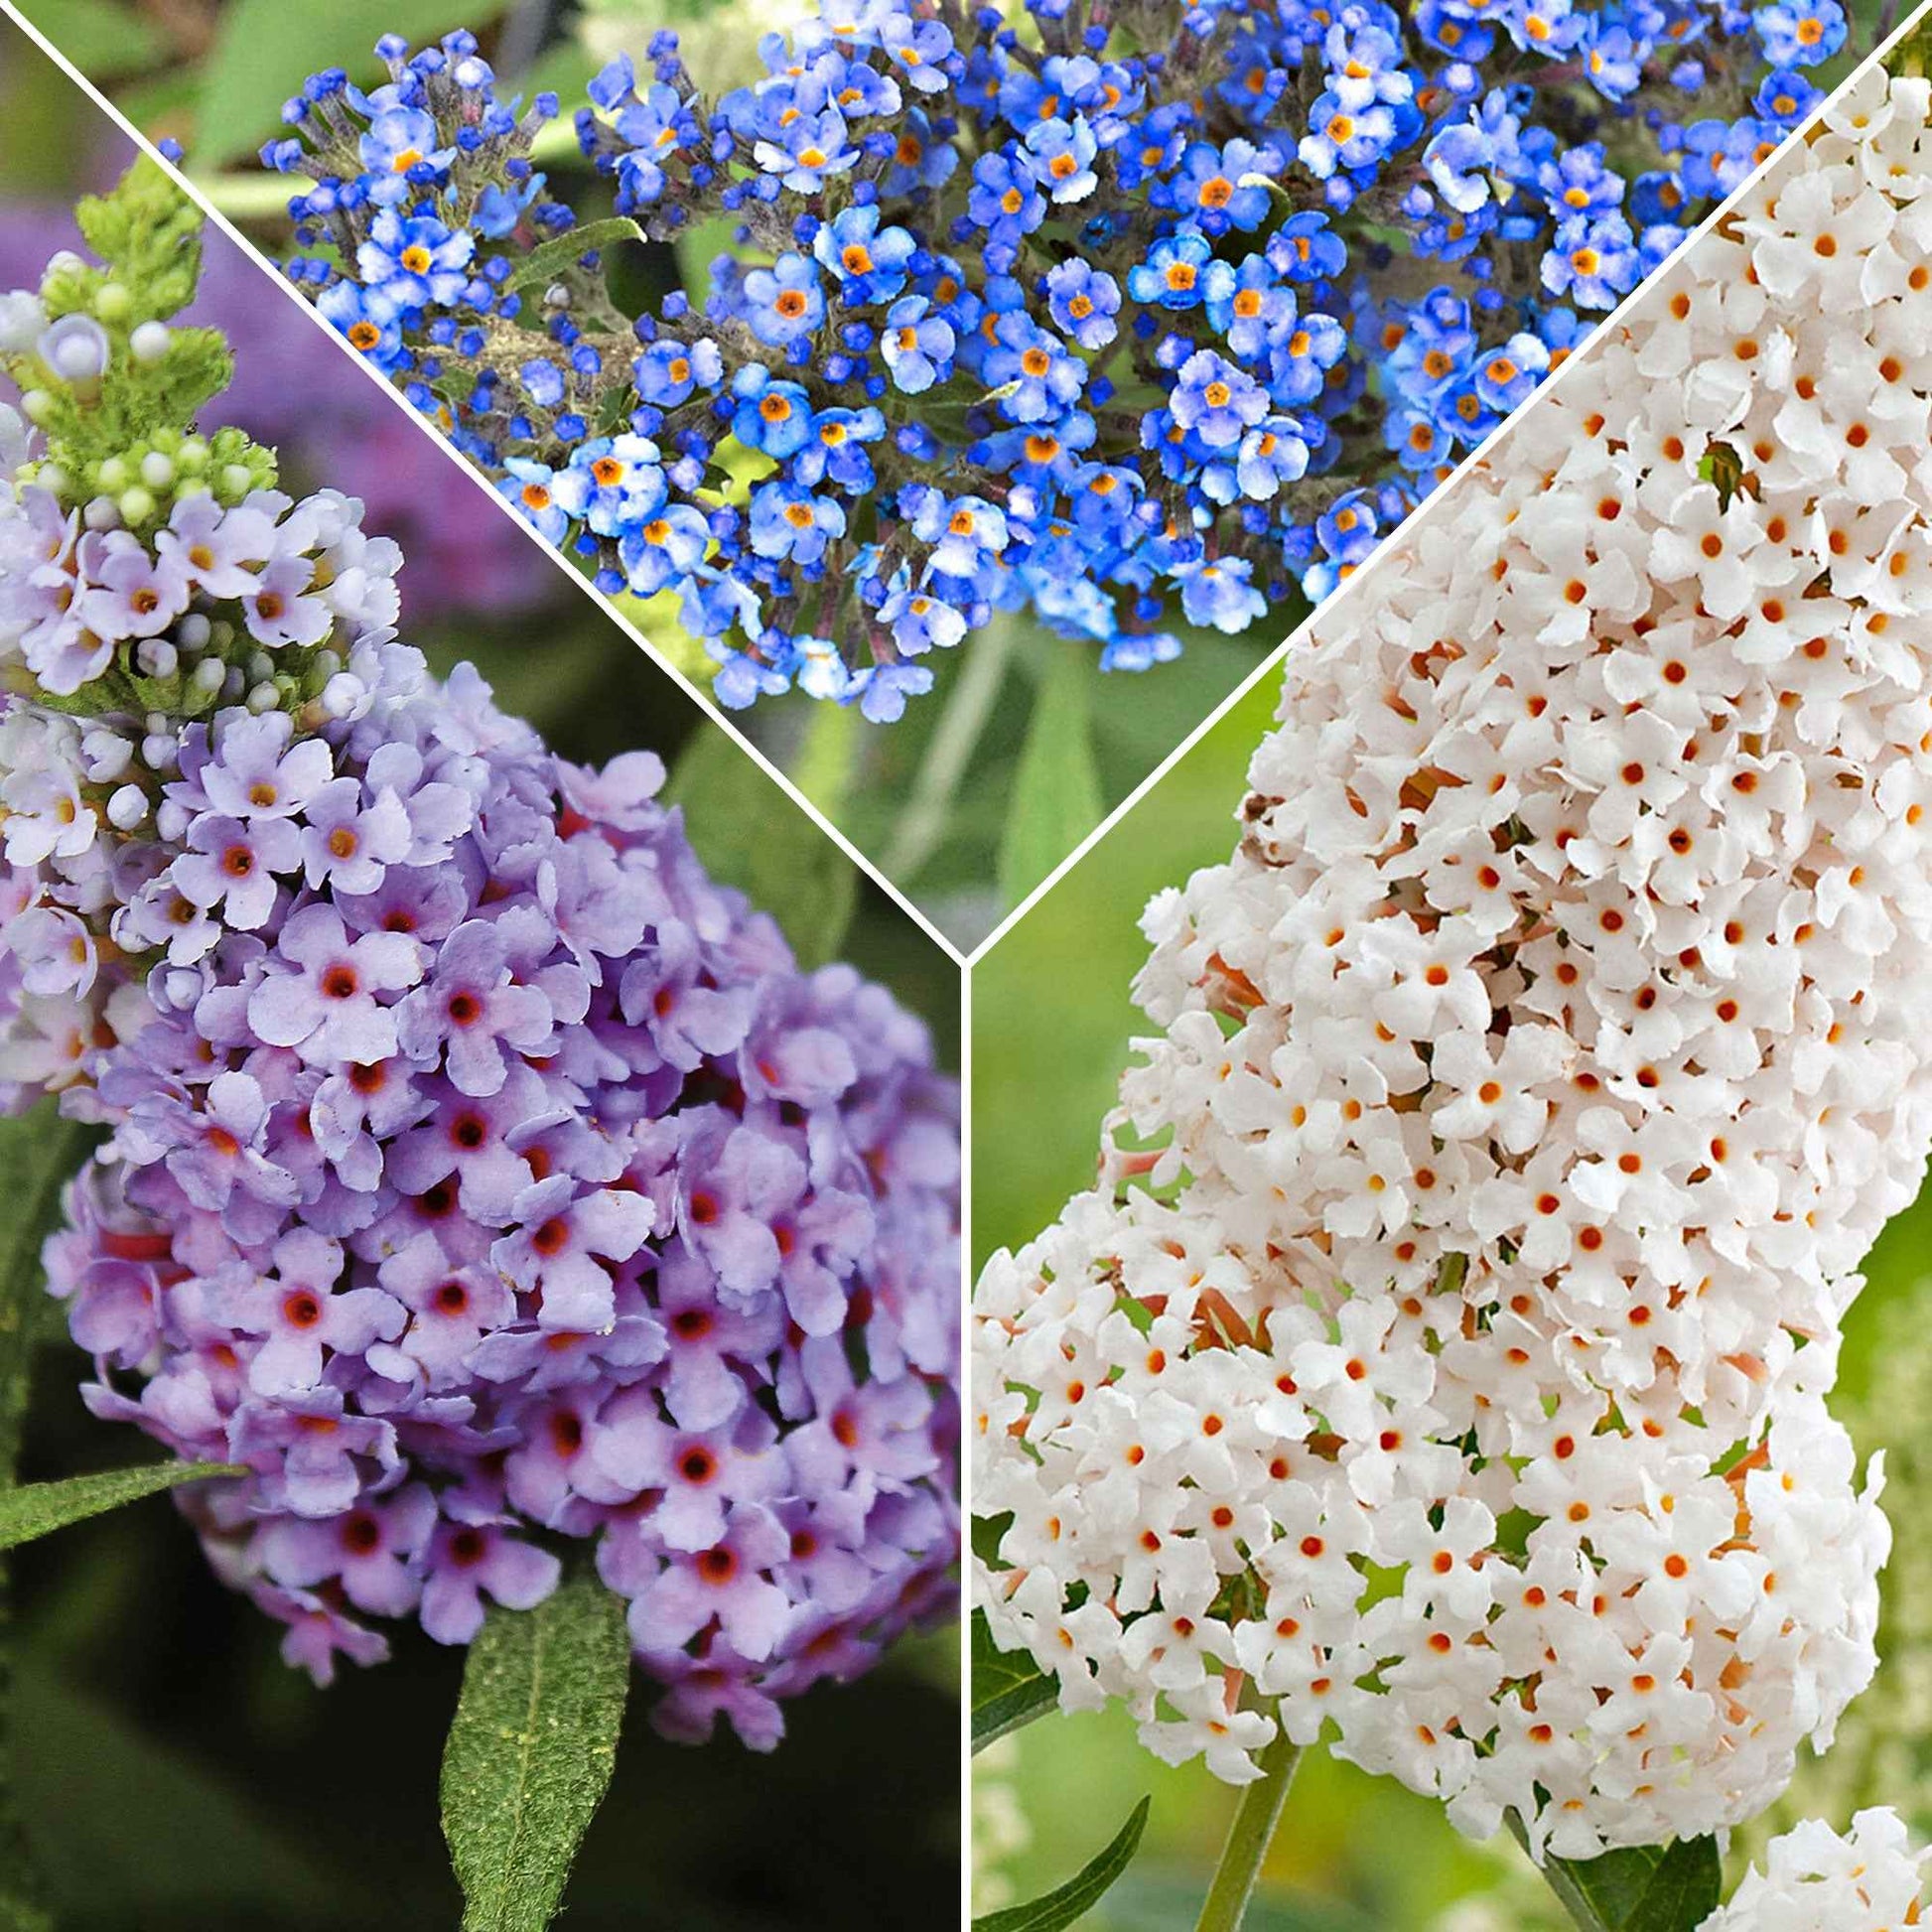 3x Schmetterlingsflieder Buddleja 'Lilac Turtle' + 'White Swan' + 'Blue Sarah' blau-lila-weiβ 'Tricolor' - Winterhart - Pflanzeneigenschaften